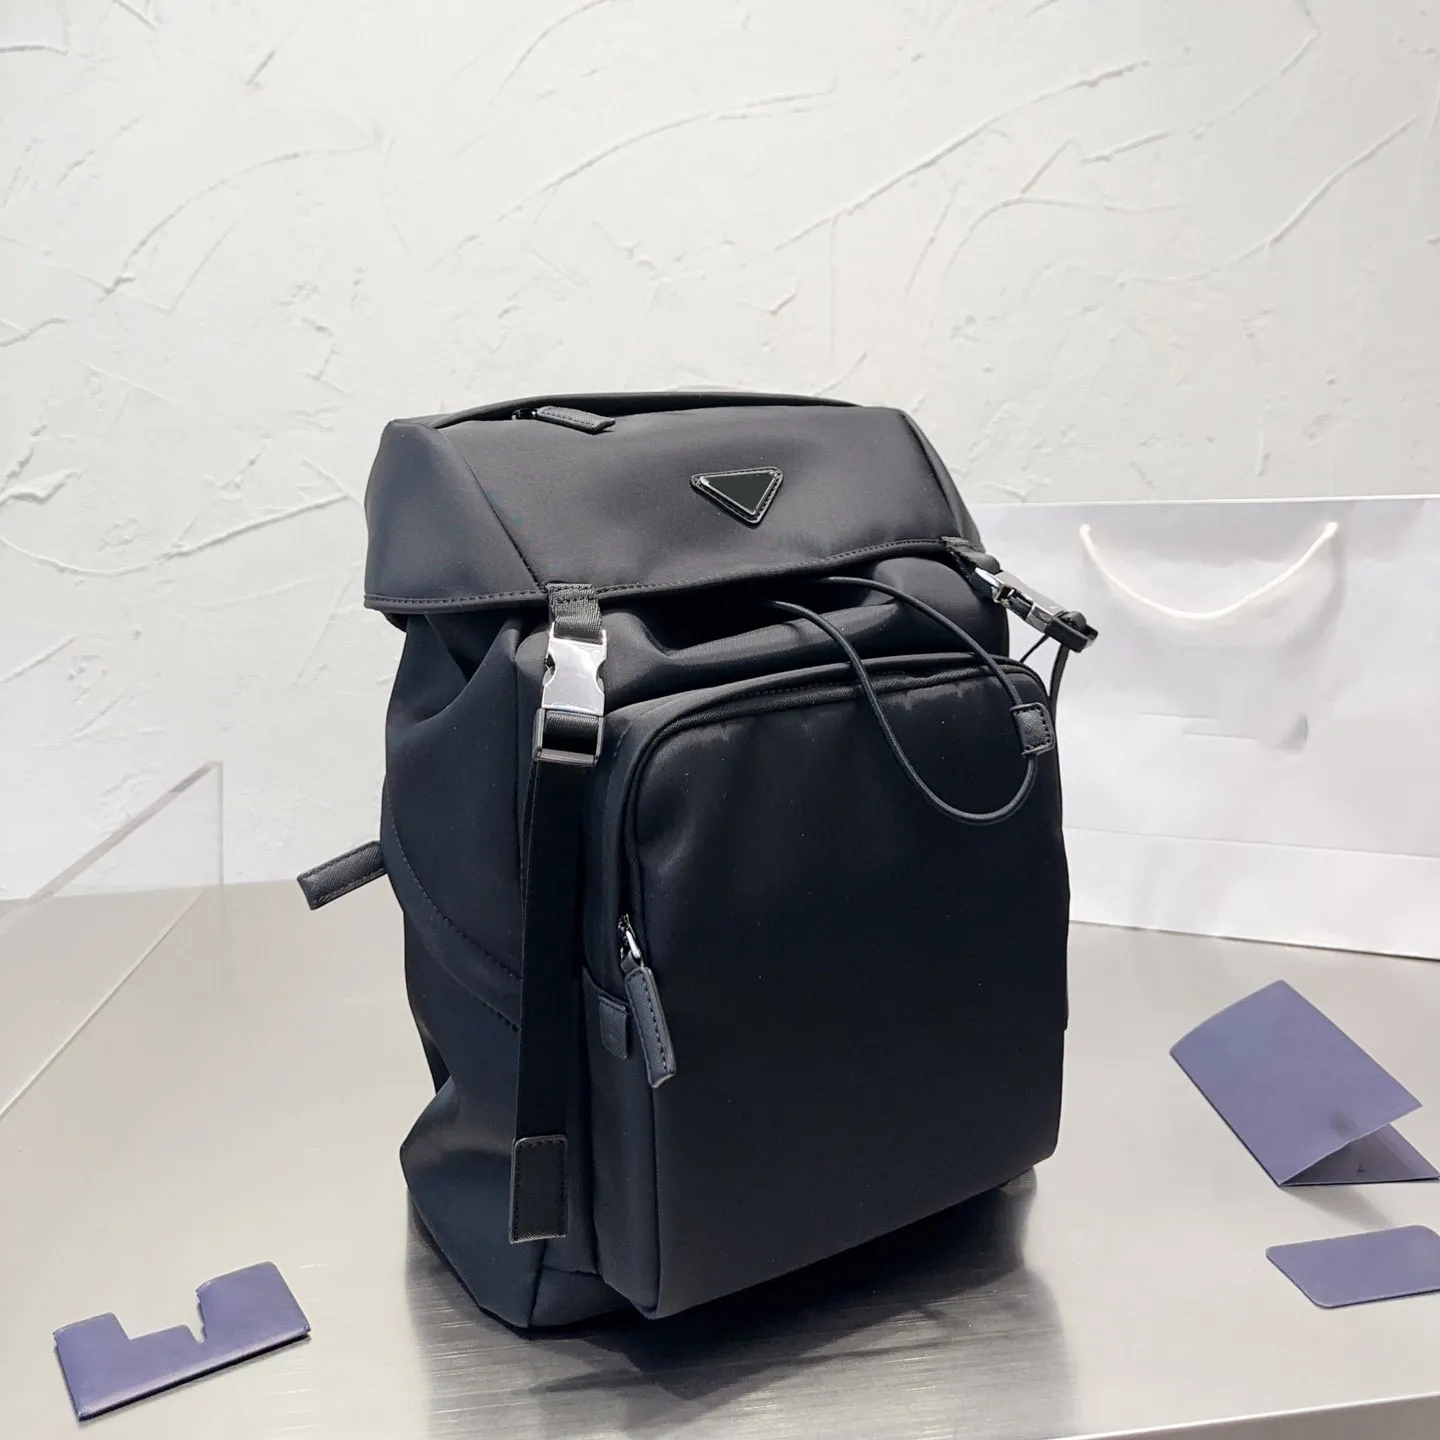 Designer men's new backpack, premium backpack, handbag, shoulder crossbody bag, messenger bag Luggage Backpacks Laptop Travel Travelbag Back Pack Outdoor travel bag